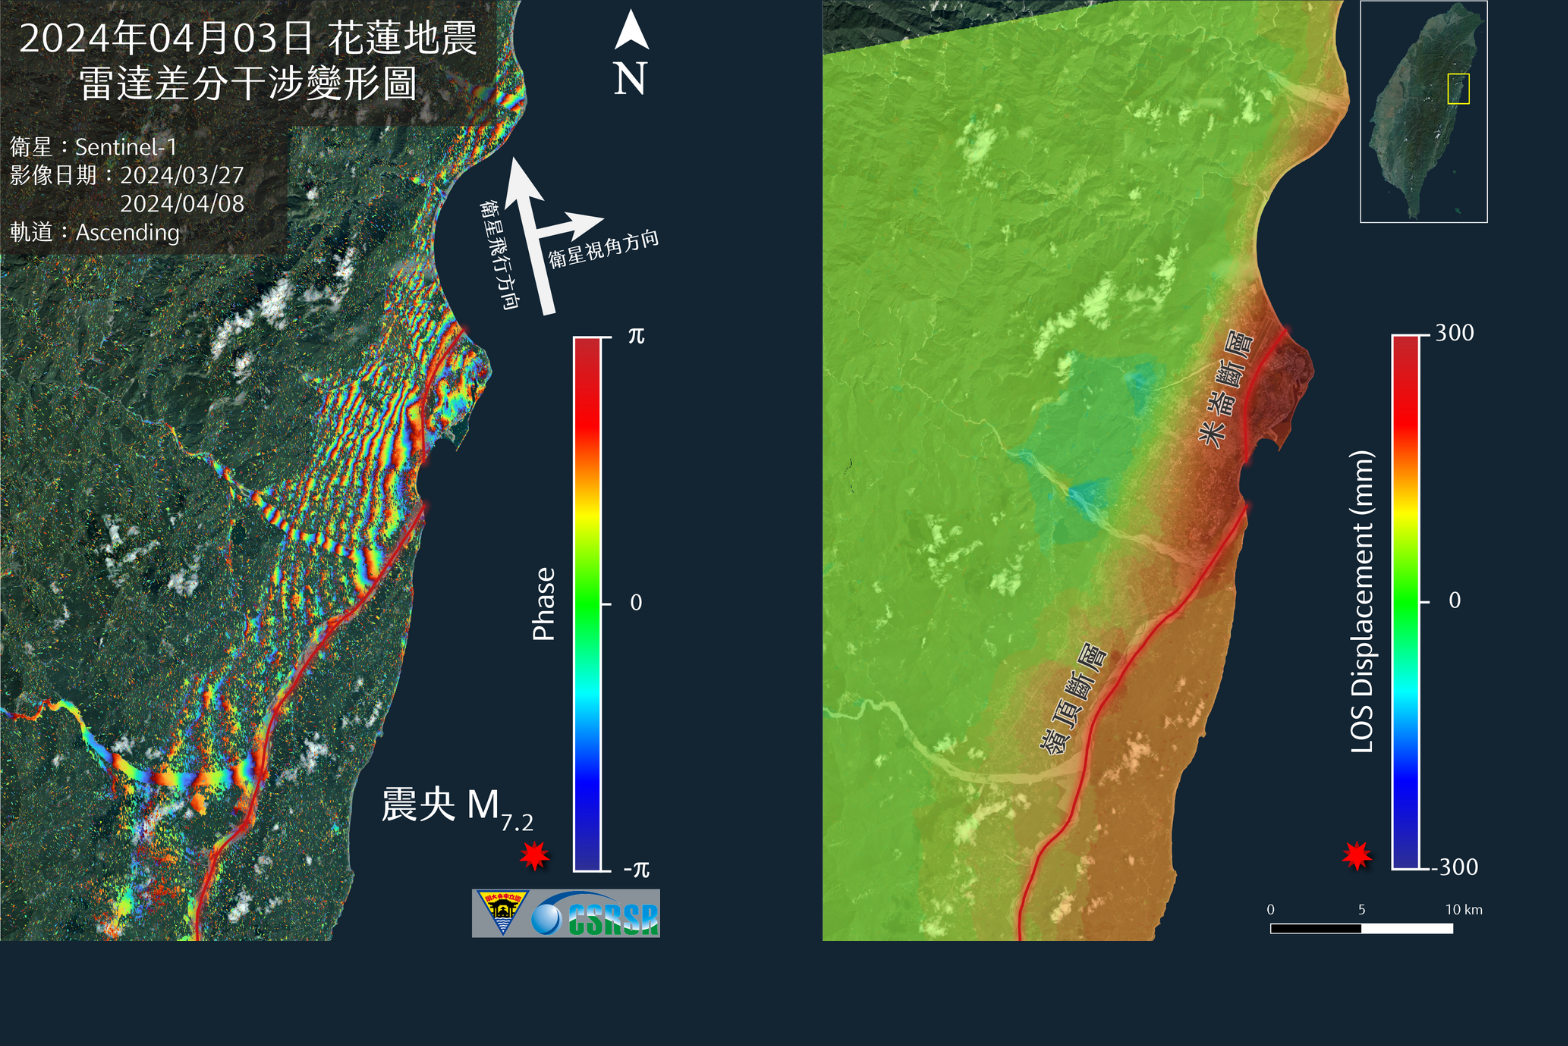 花蓮地震雷達衛星影像差分干涉分析成果及解算出之地表變形量。照片太空及遙測研究中心提供